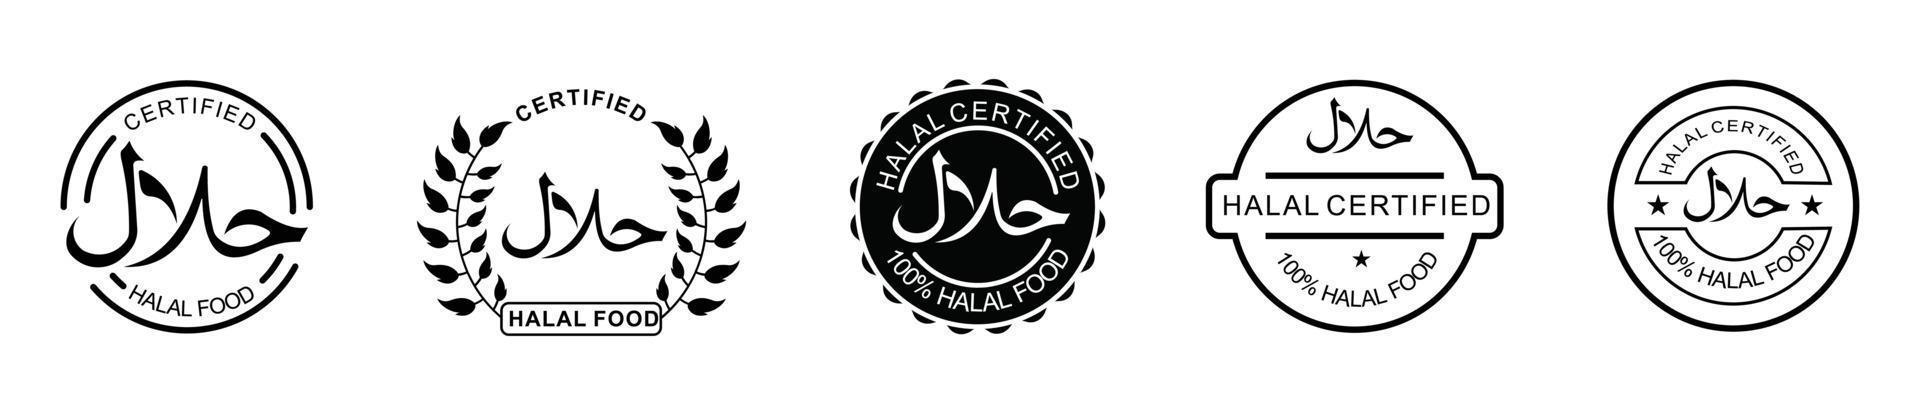 conjunto de iconos halal emblema del producto ilustración vectorial. conjunto de etiquetas de productos alimenticios halal, etiqueta de certificado de signo halal vectorial. vector